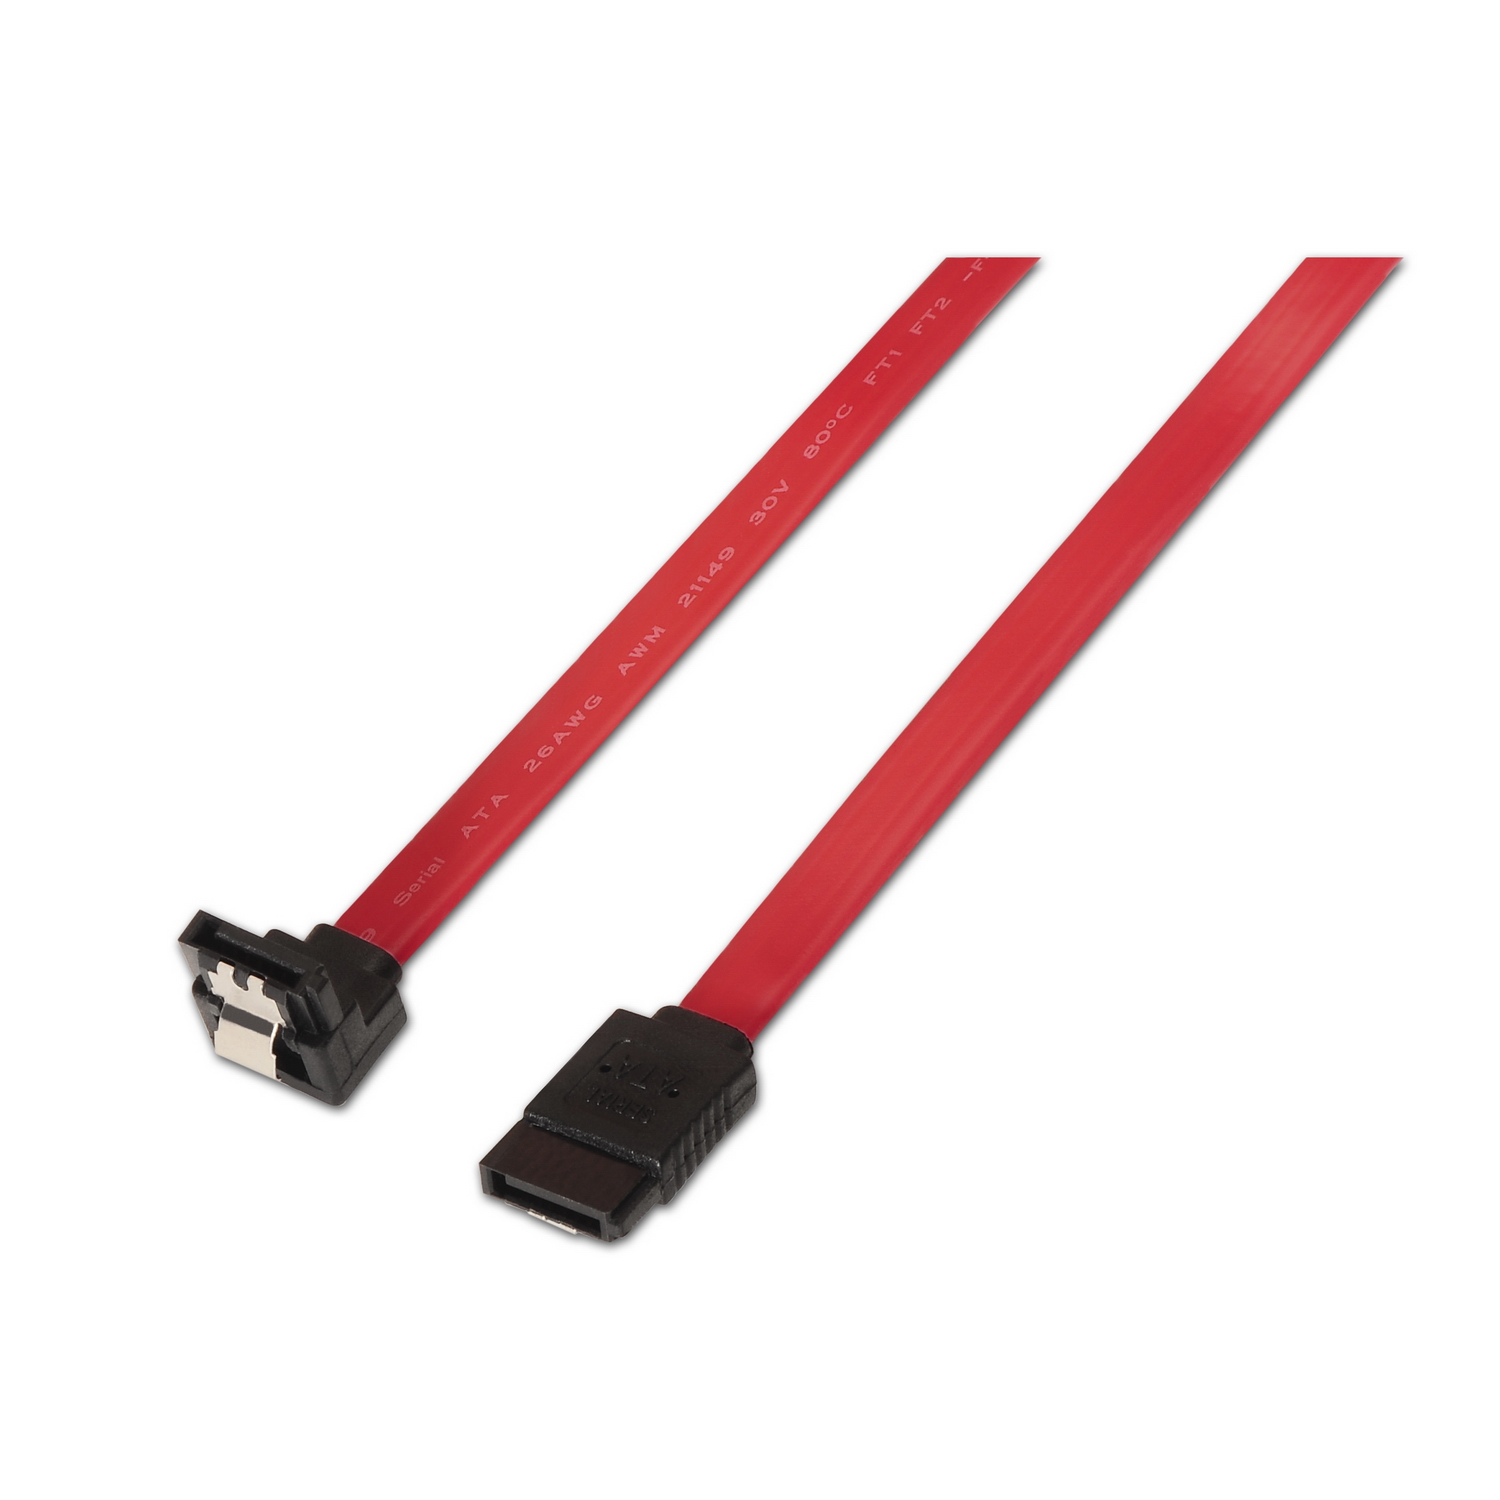 Empírico Vergonzoso pestaña Cable SATA III datos 6G datos acodado con anclajes, rojo, 0.5 metros para  disco duro SATA I, II, III SSD - AISENS®